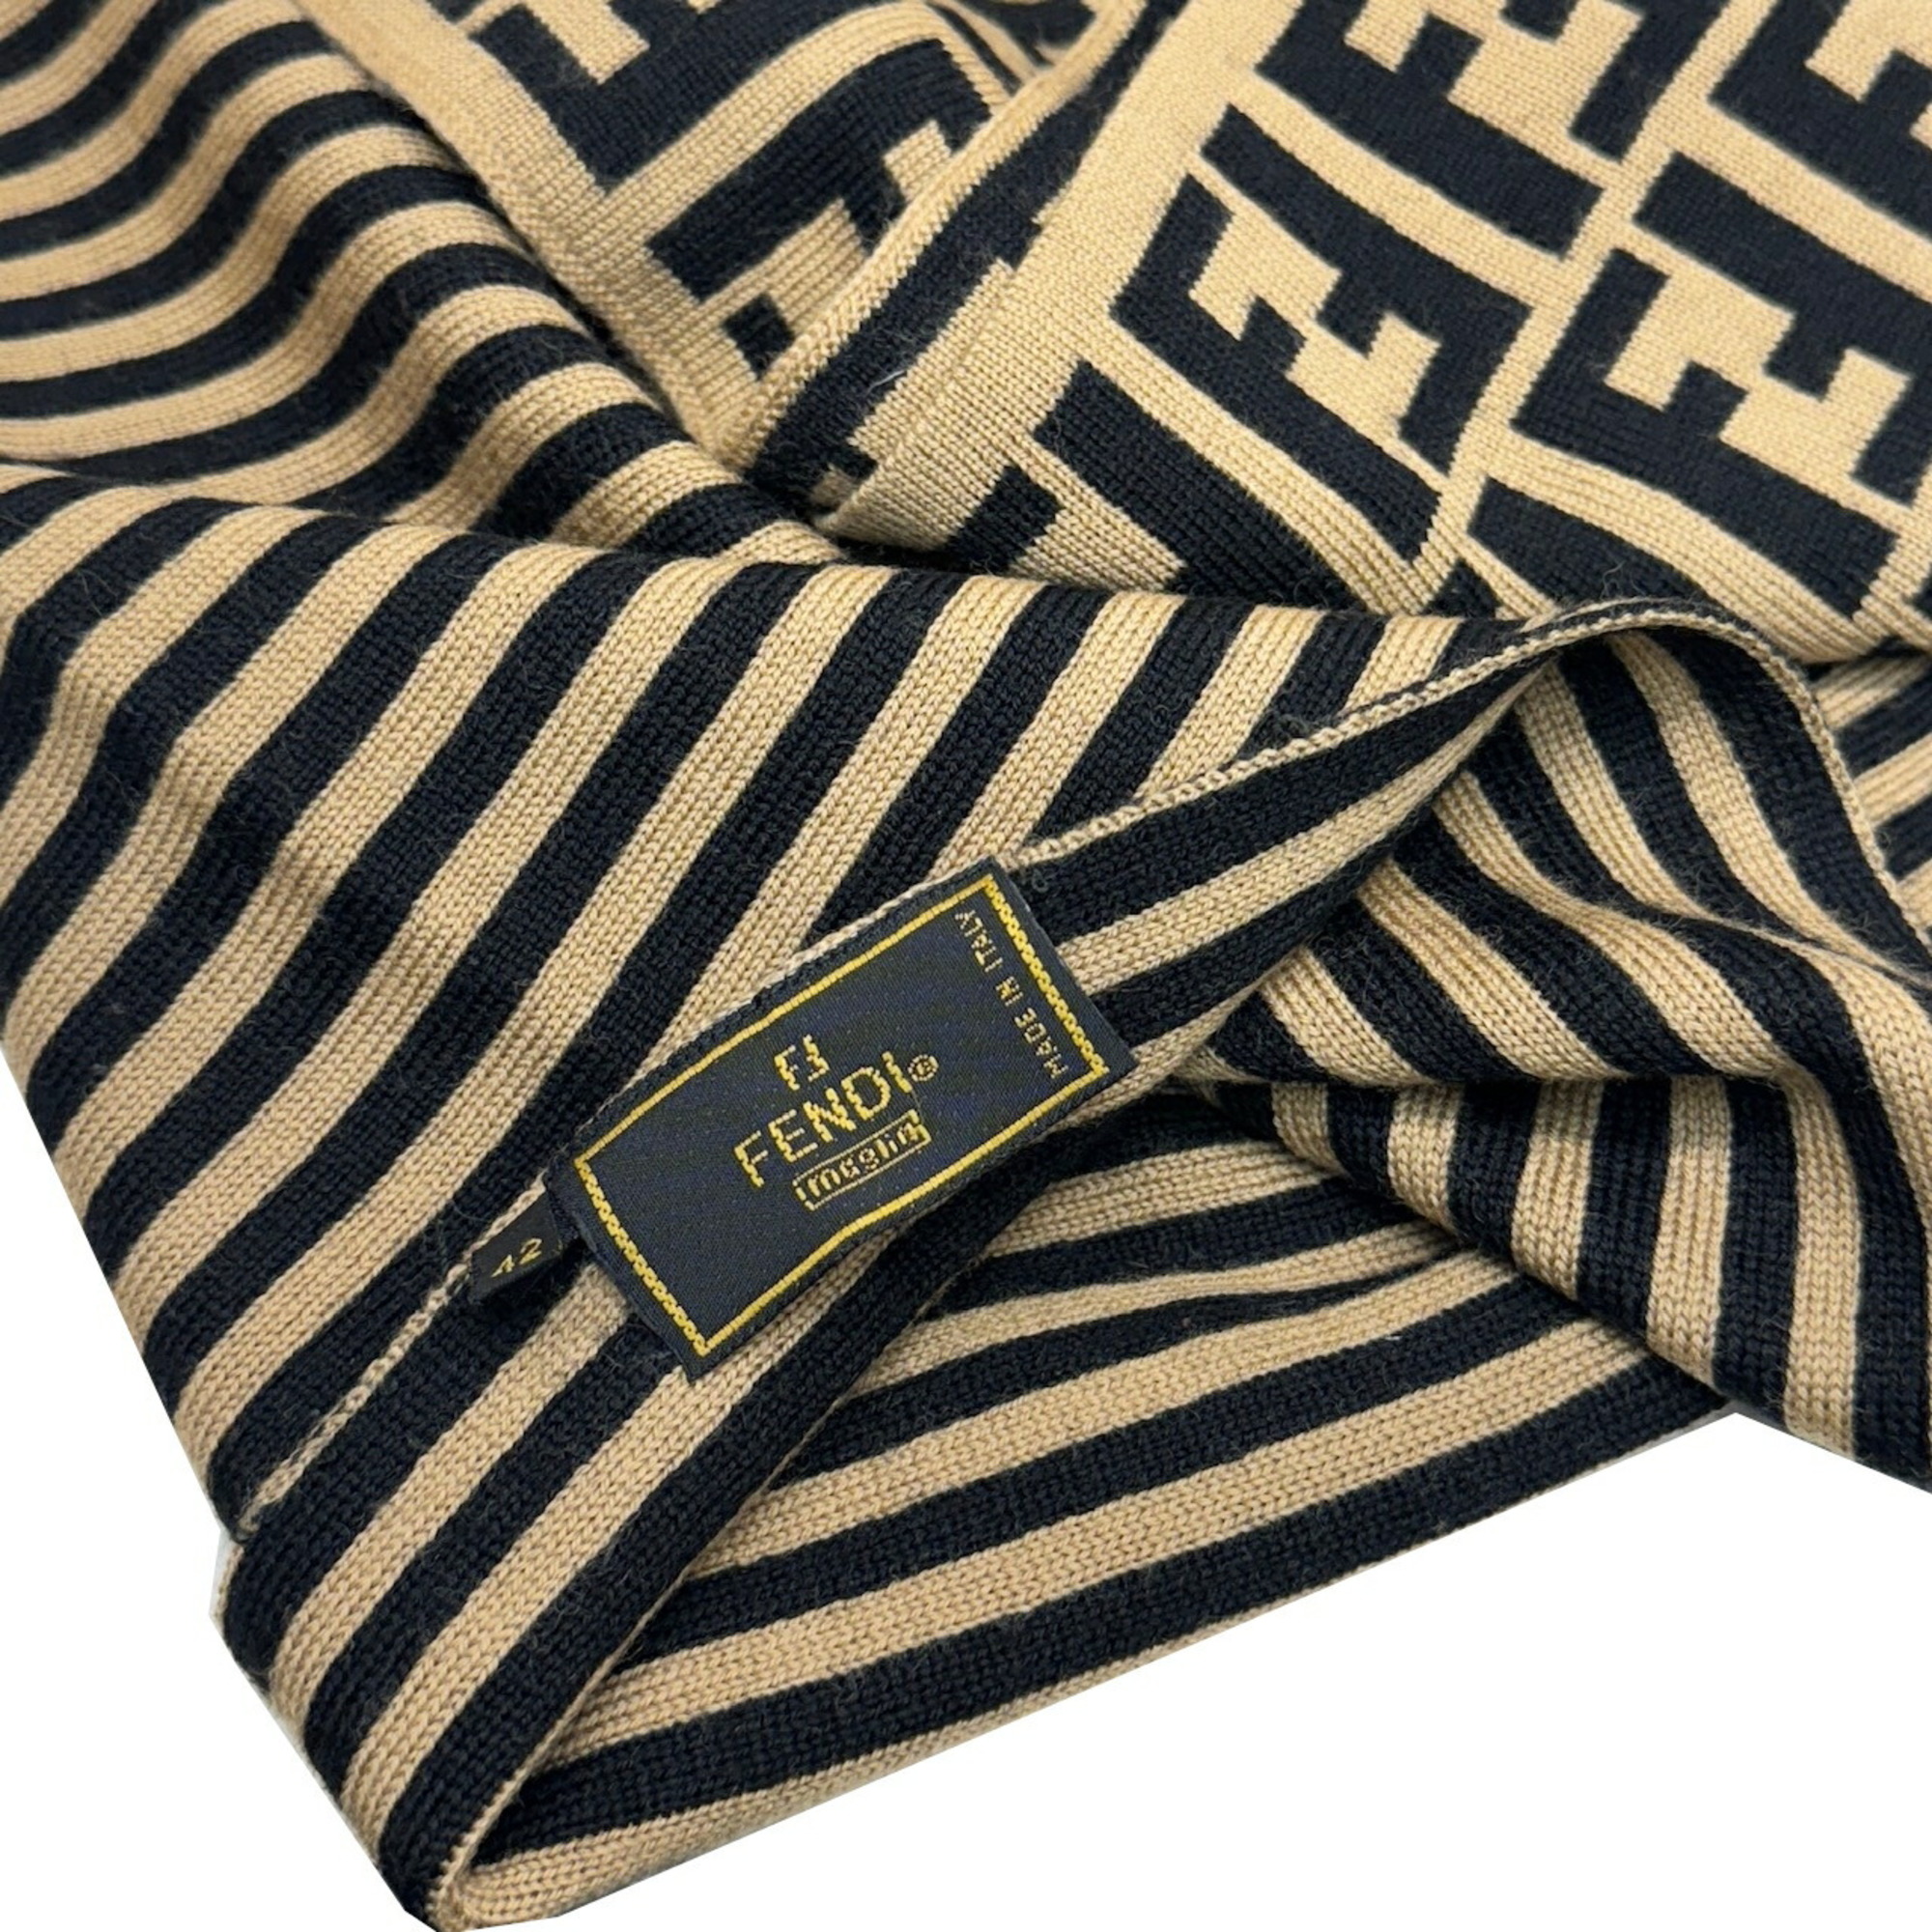 FENDI Zucca pattern FF scarf wool striped beige black men's women's